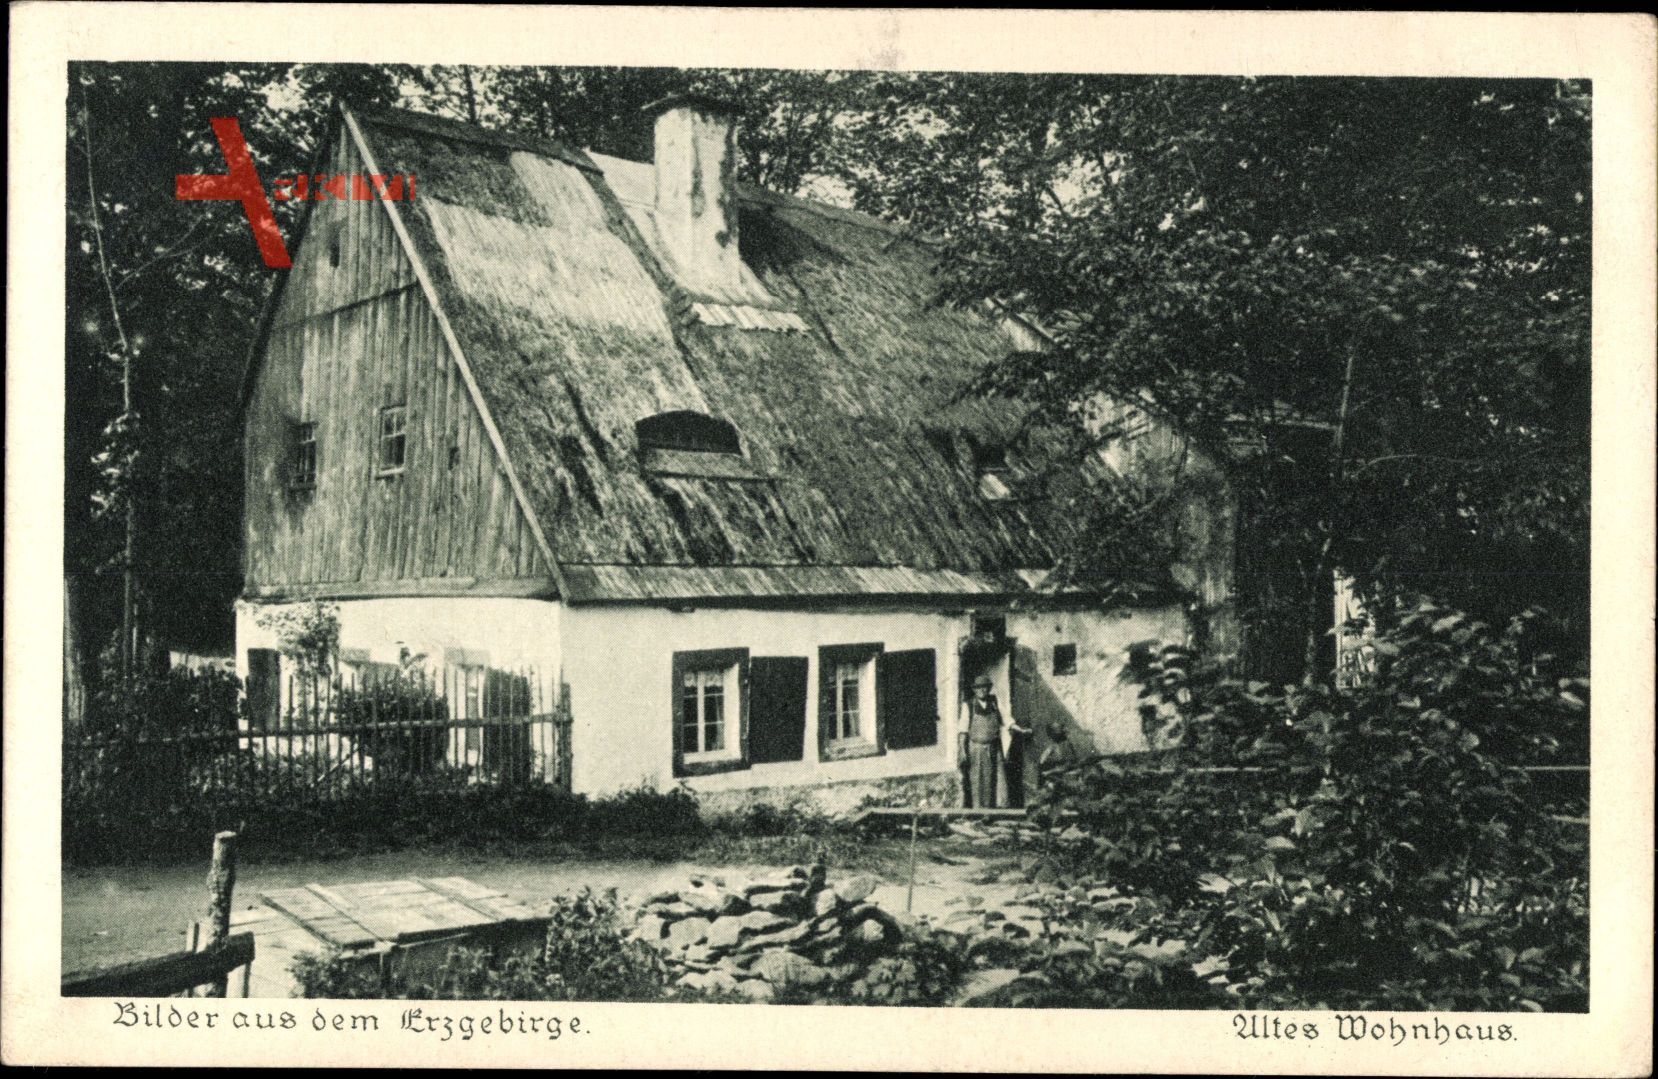 Bilder aus dem Erzgebirge, Altes Wohnhaus mit Reetdach